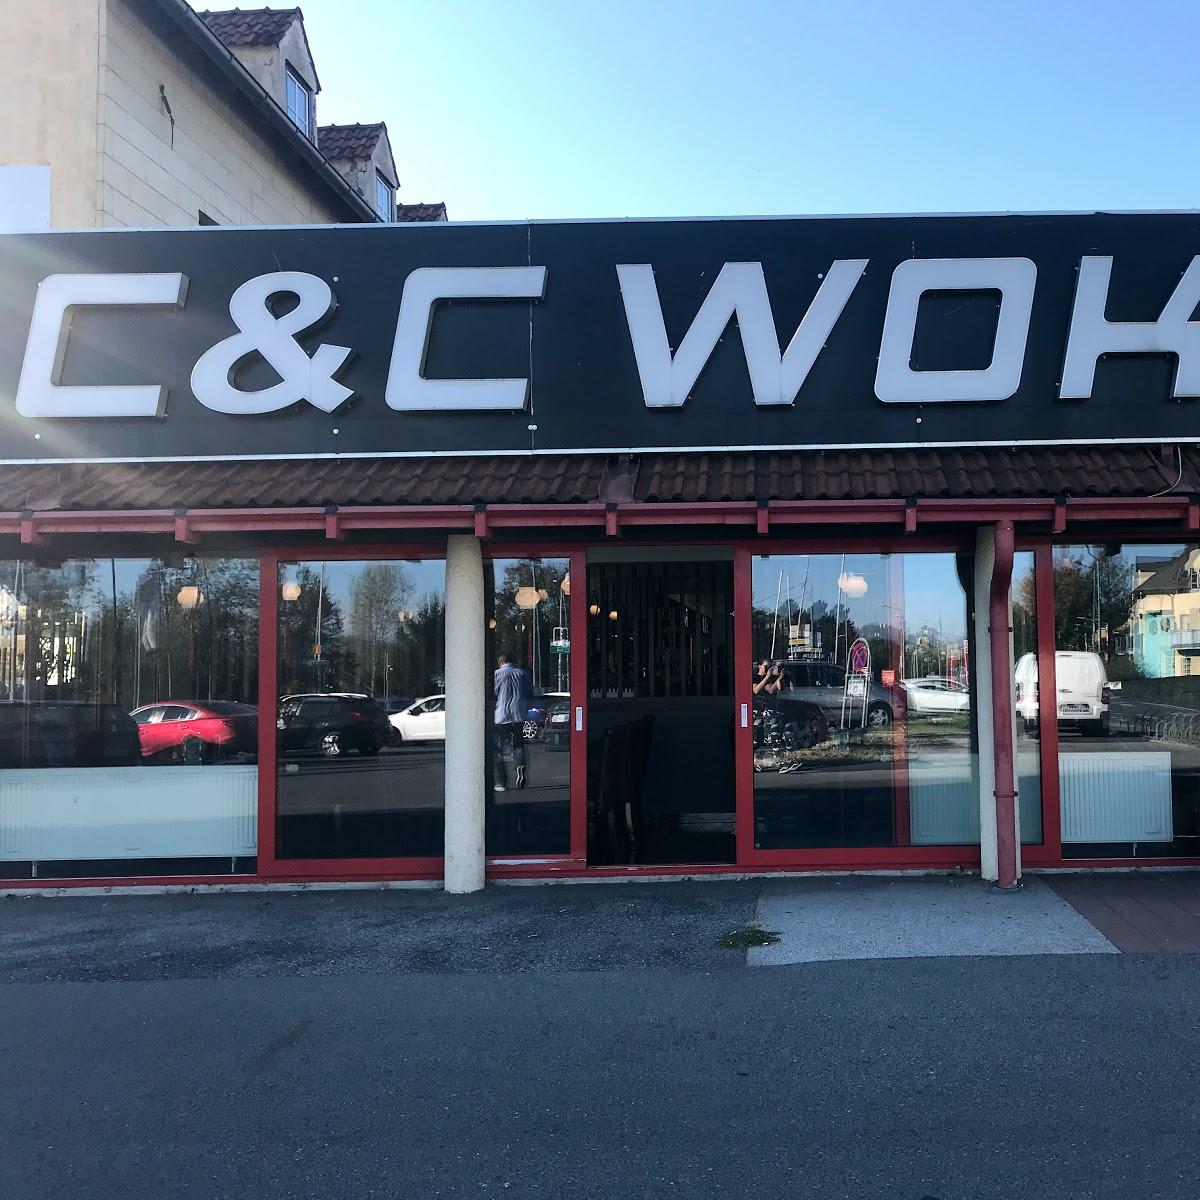 Restaurant "C & C Wok" in Neunkirchen